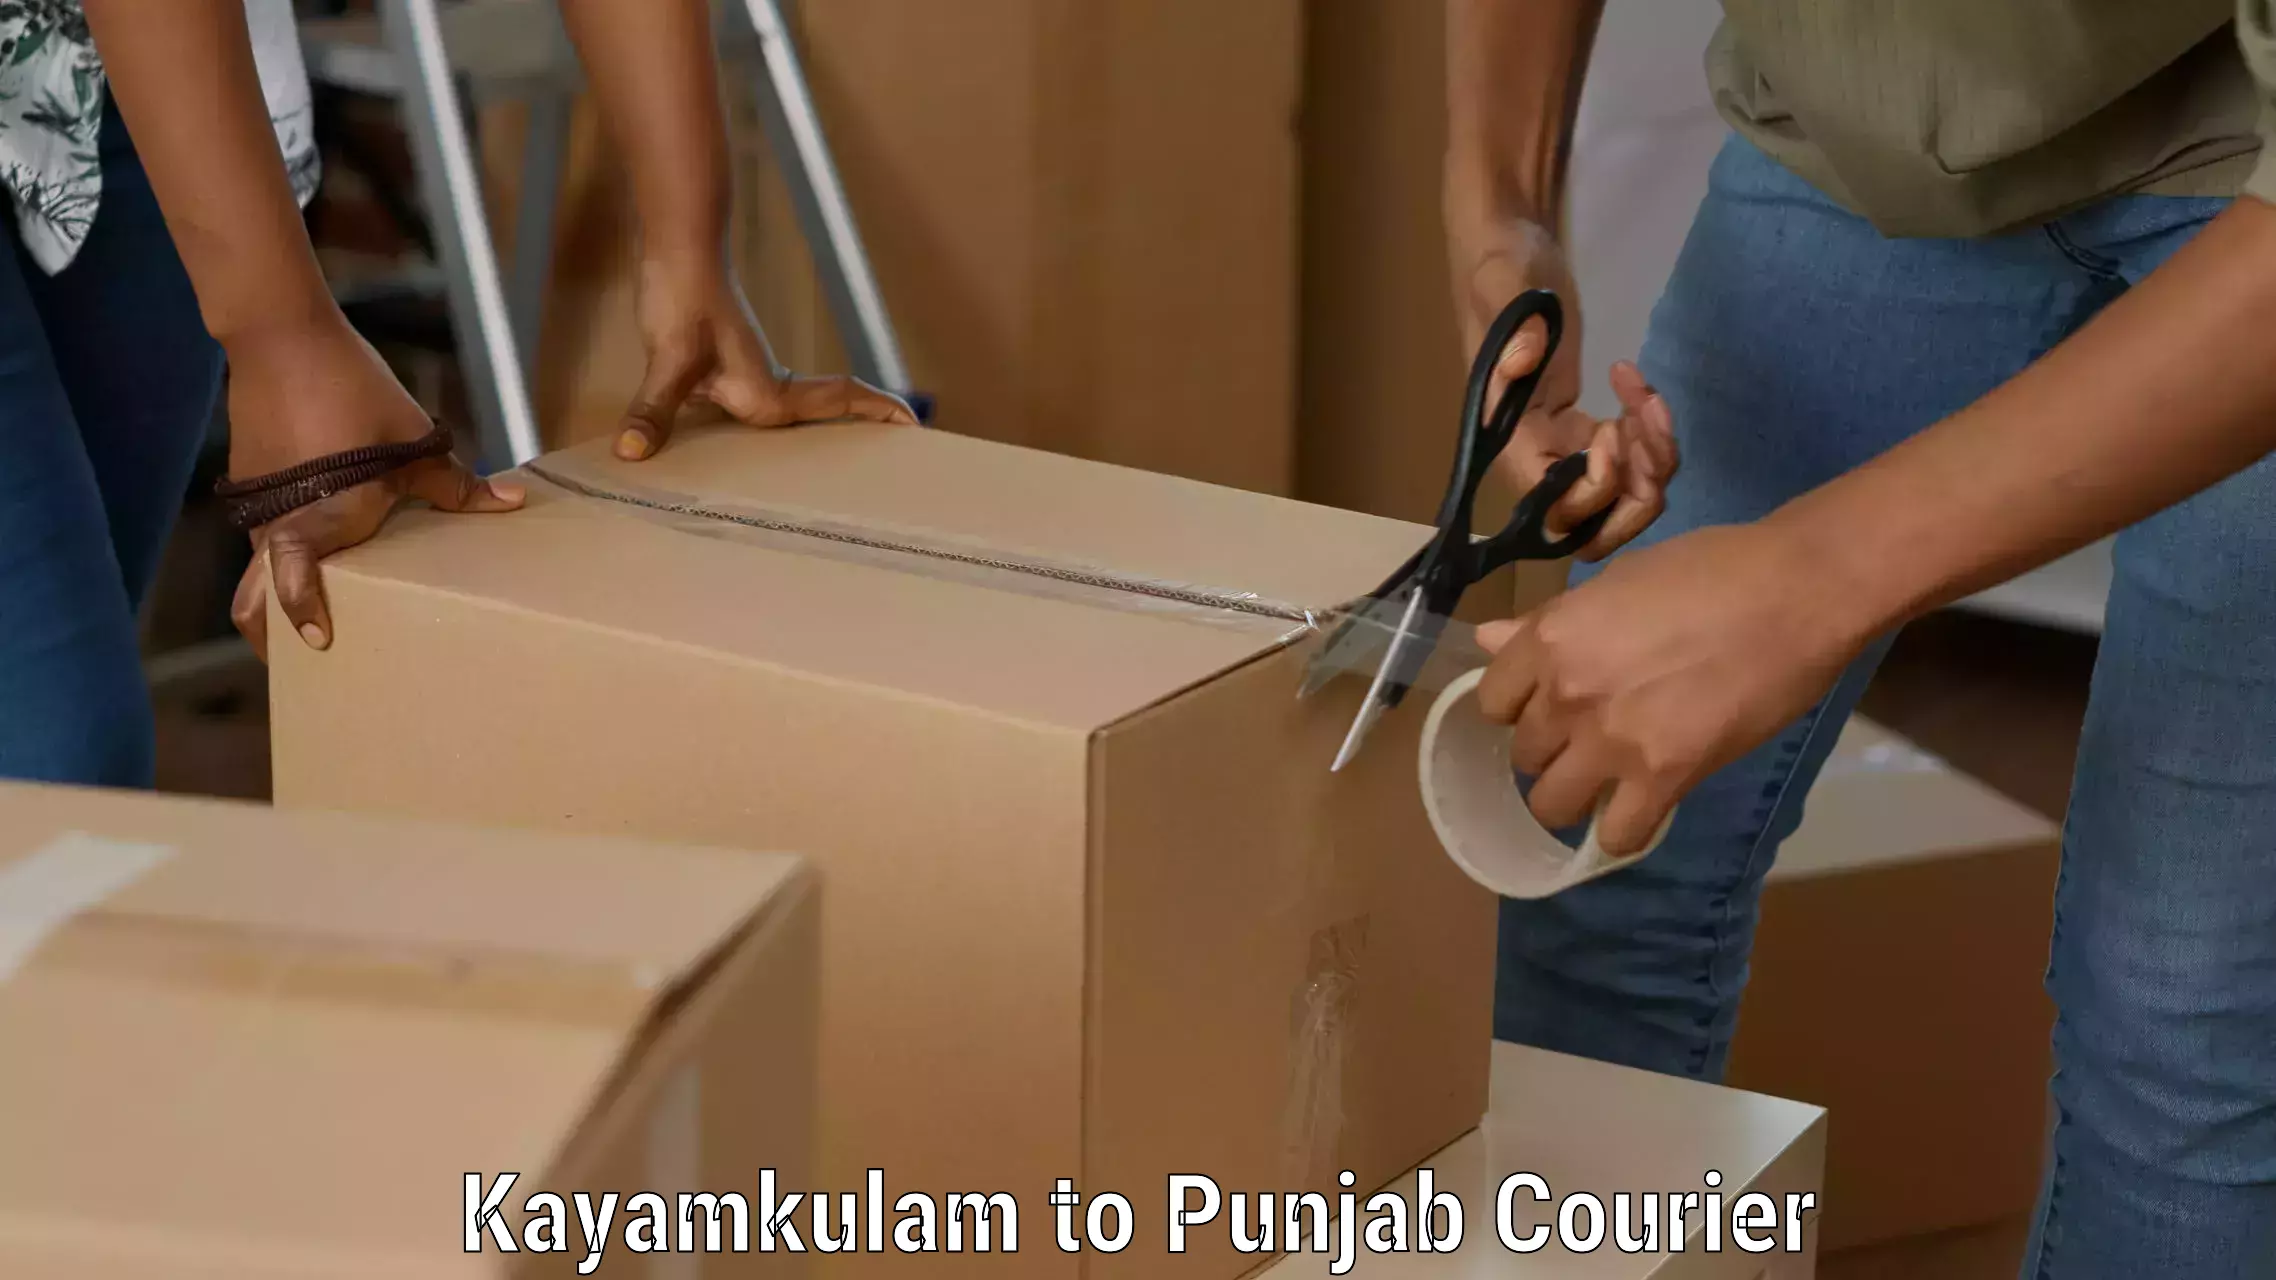 Bulk courier orders Kayamkulam to Ajnala